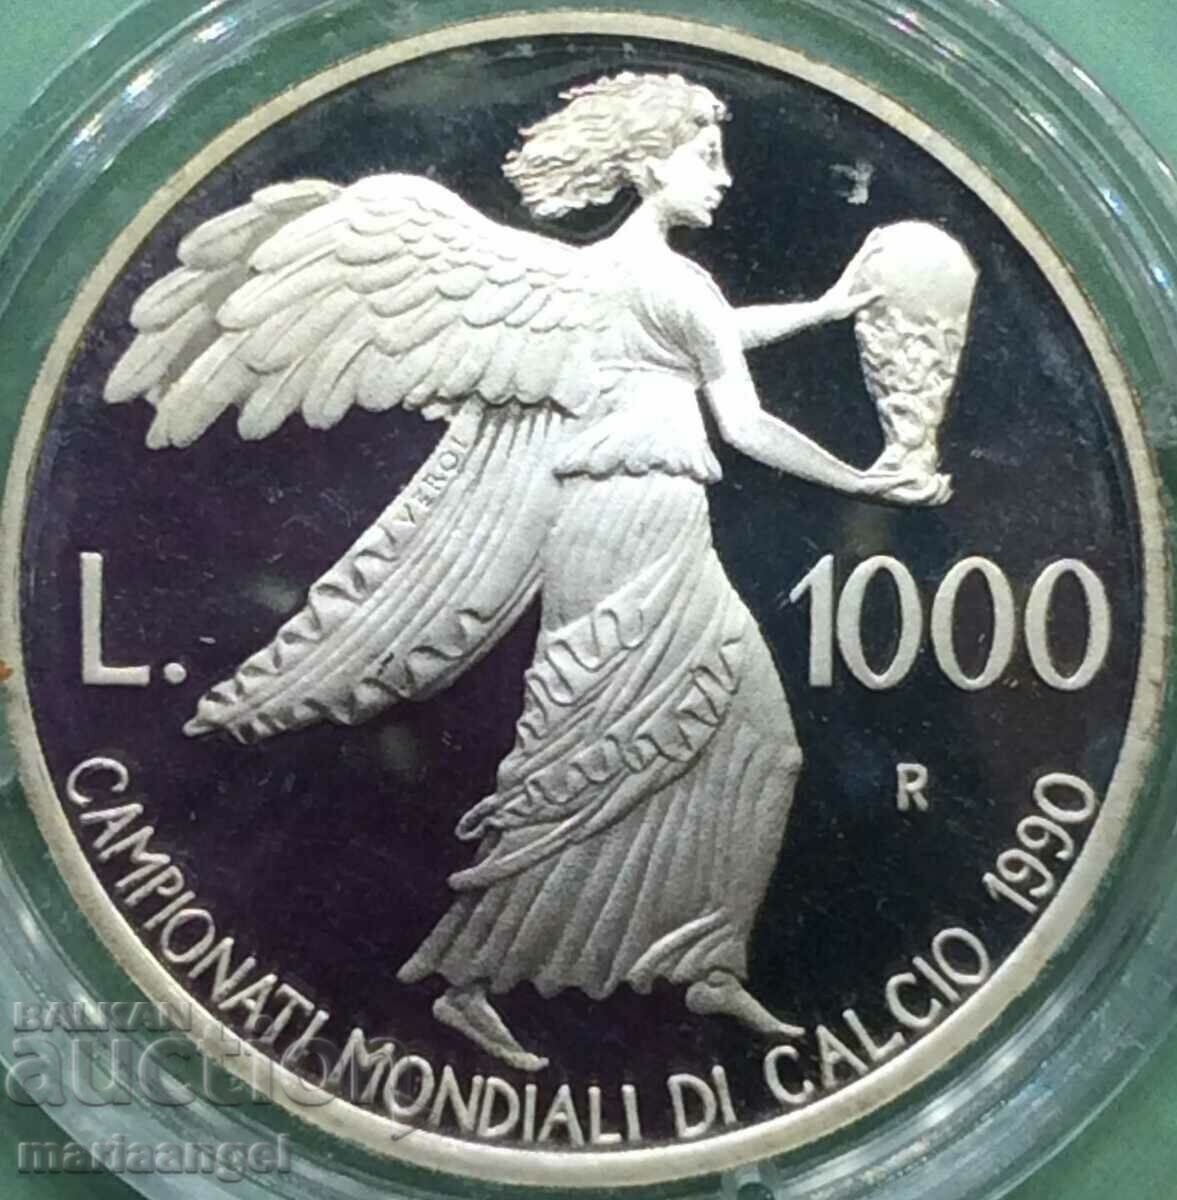 1000 λιρέτες Παγκόσμιο Κύπελλο Ποδοσφαίρου Σαν Μαρίνο 1990 Ασημένιο